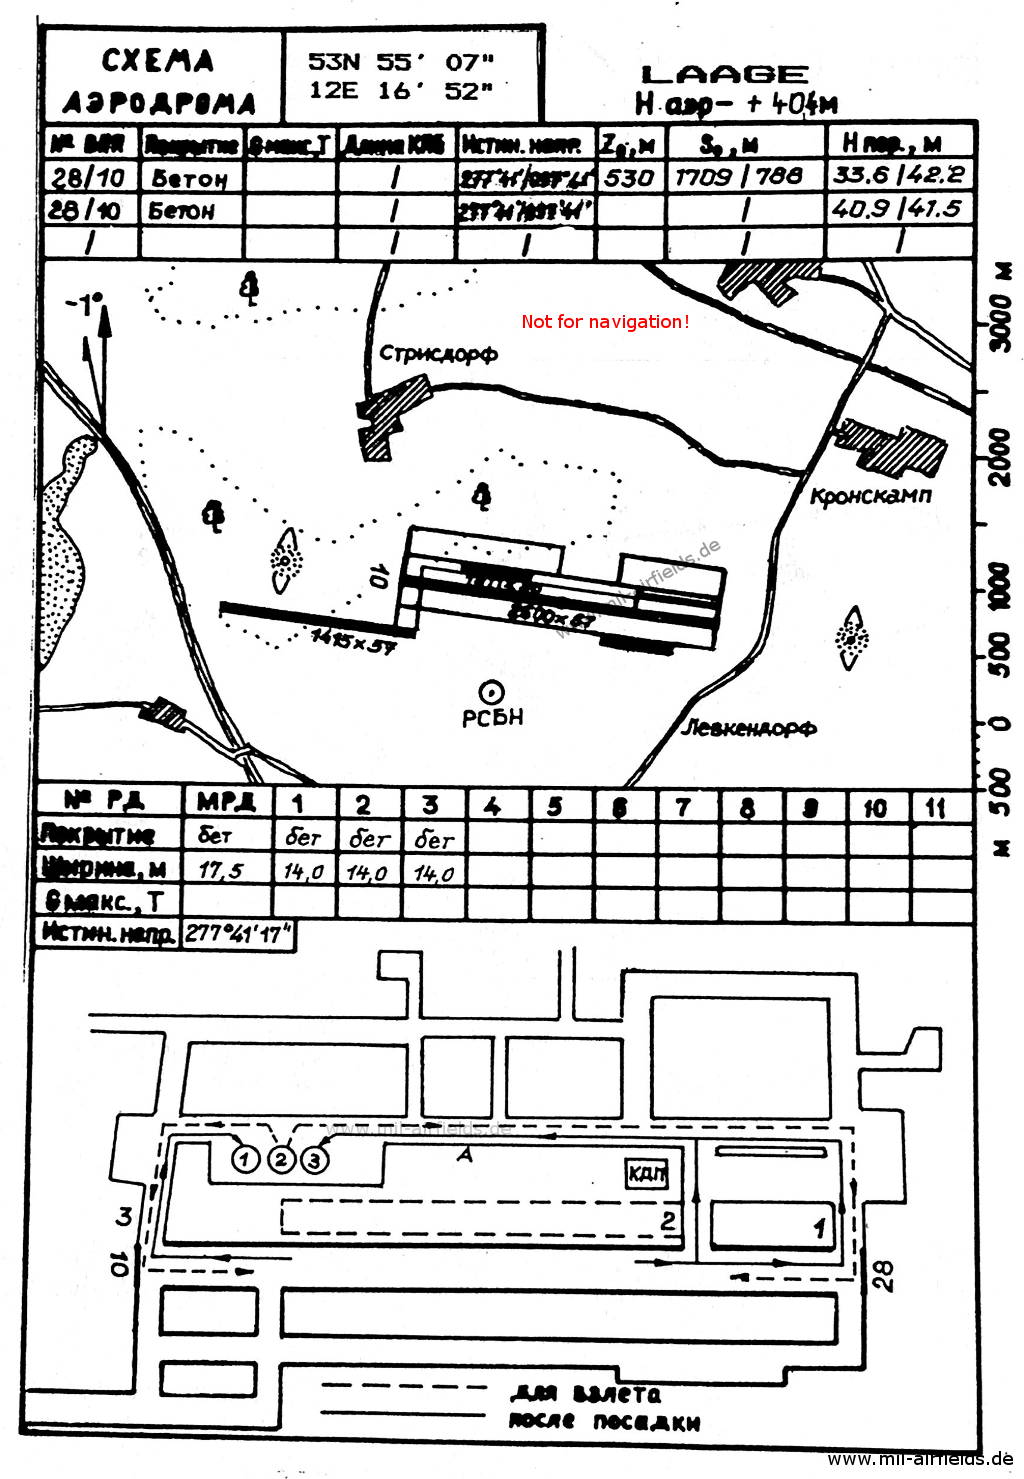 Karte NVA-Flugplatz Laage 1989